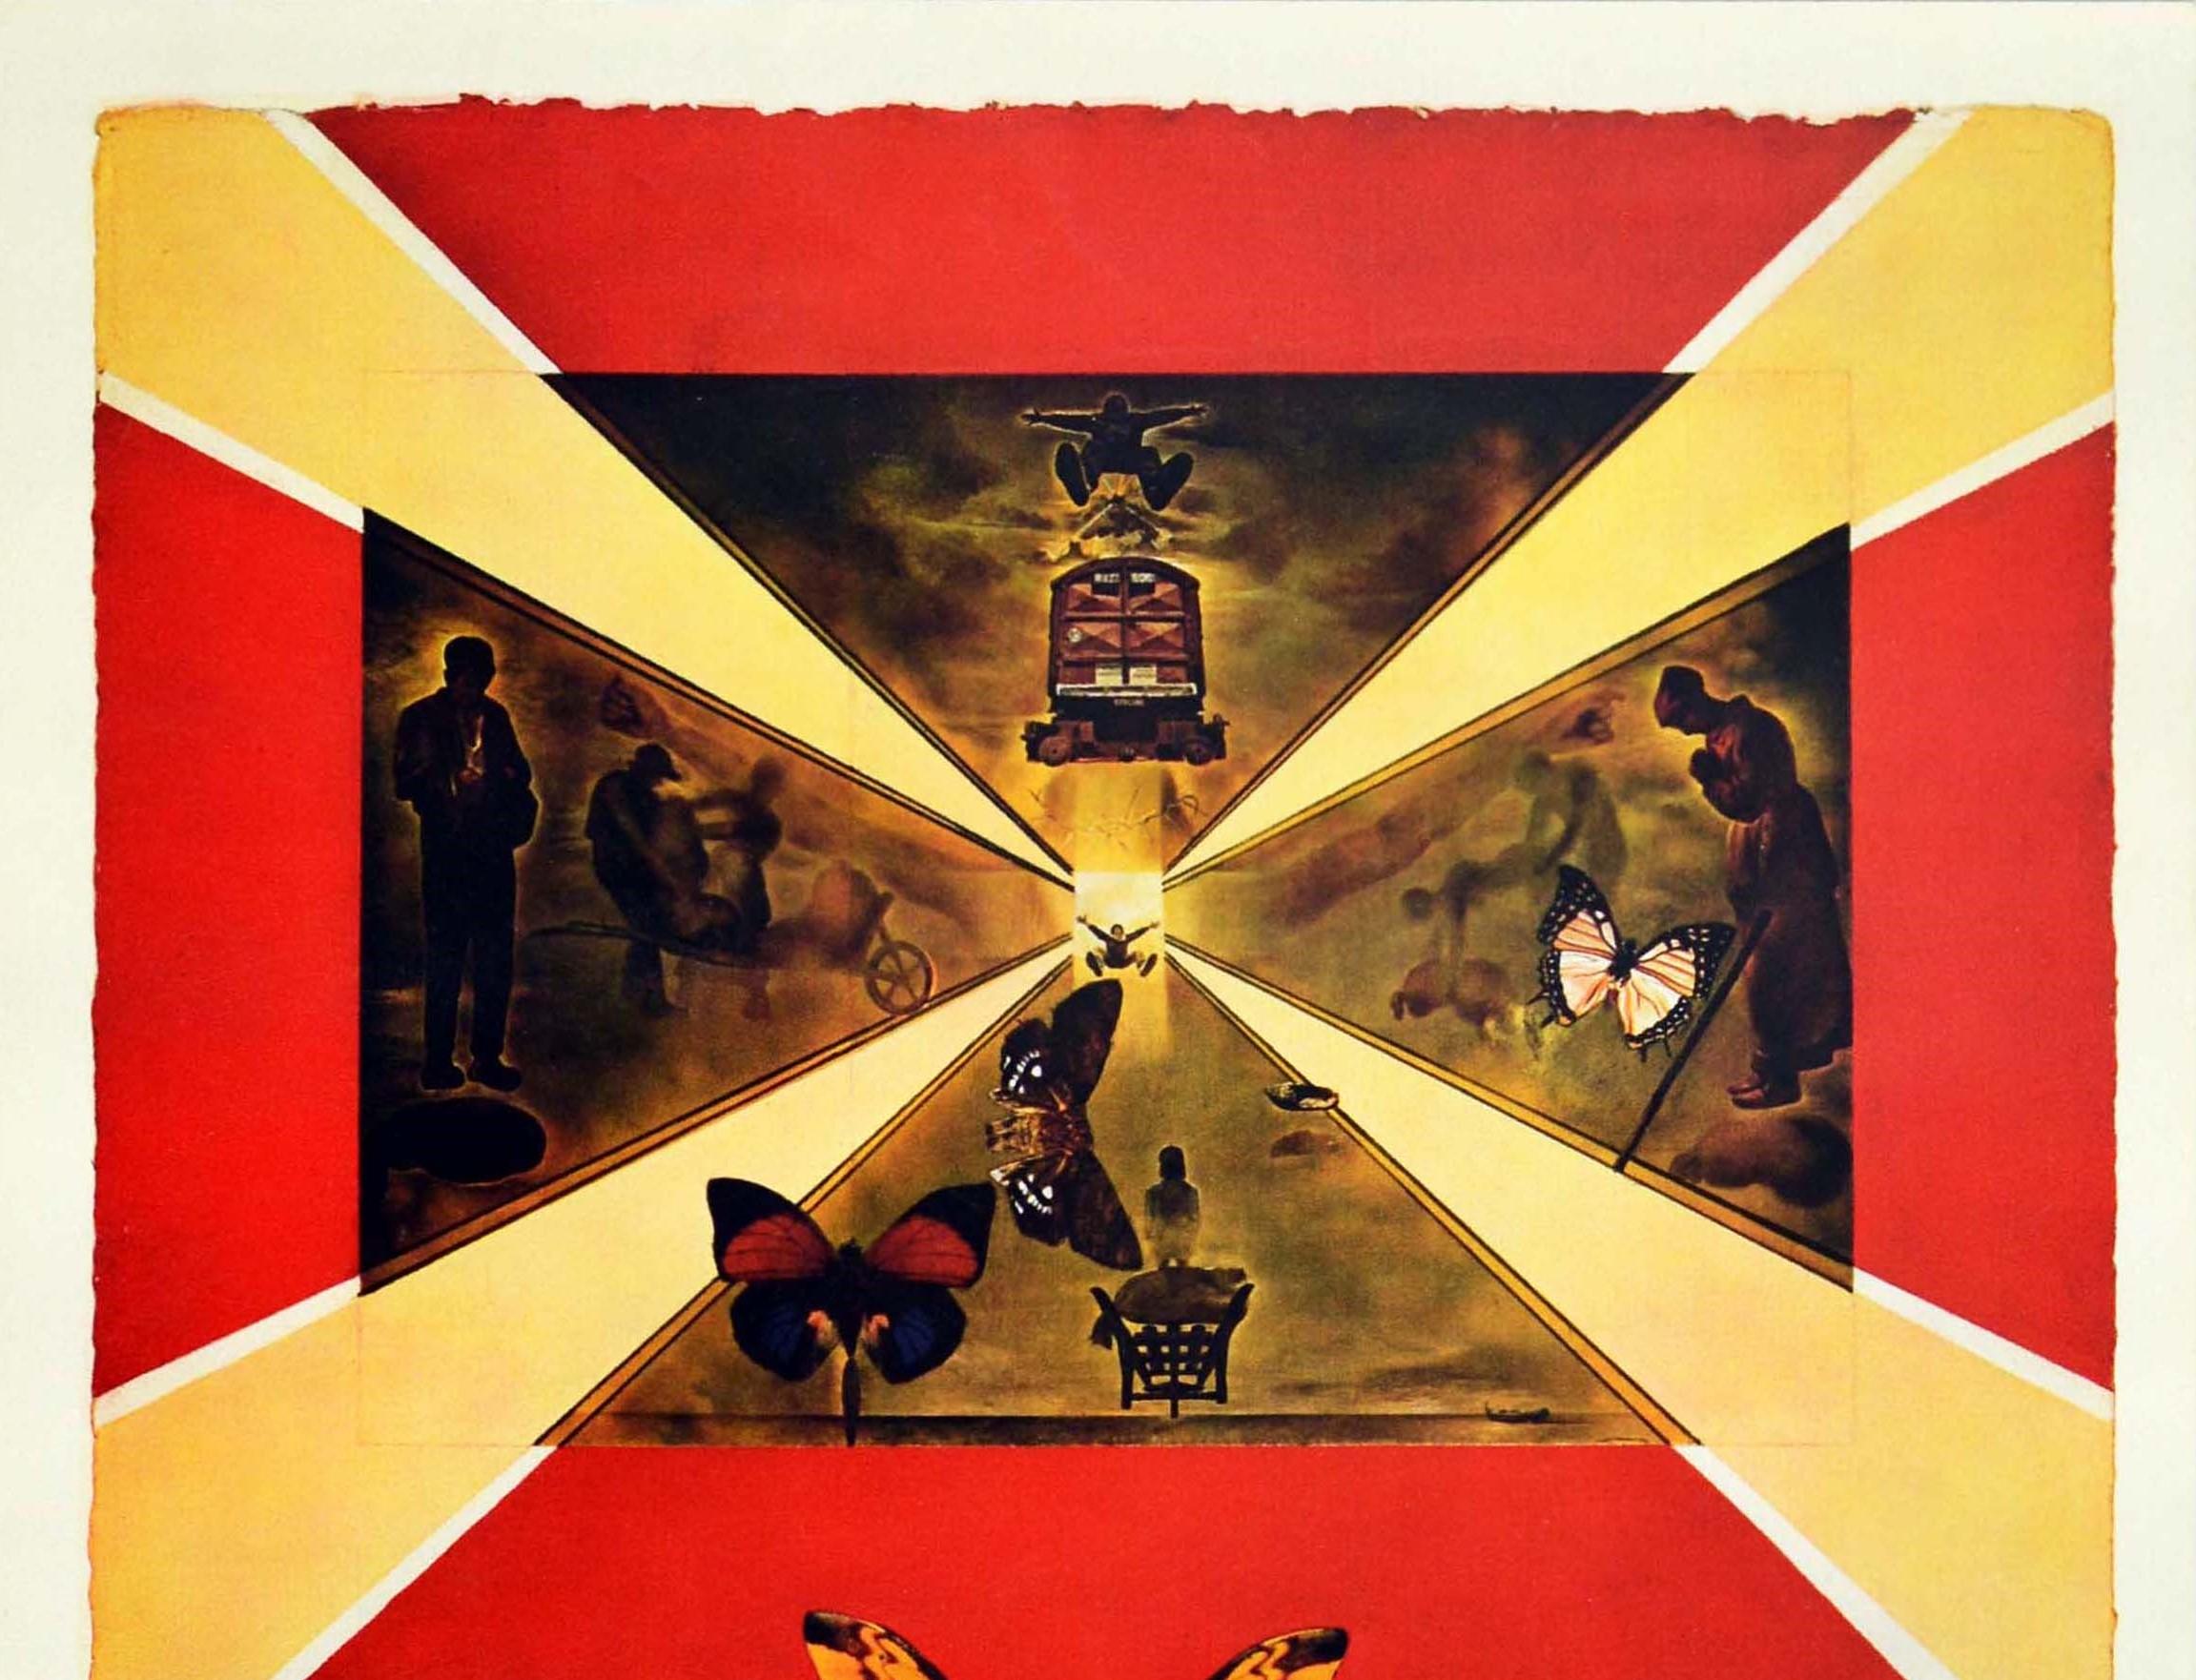 Original-Vintage-Poster Roussillon von Dali für SNCF Railways, Schmetterlingsdesign – Print von Salvador Dalí